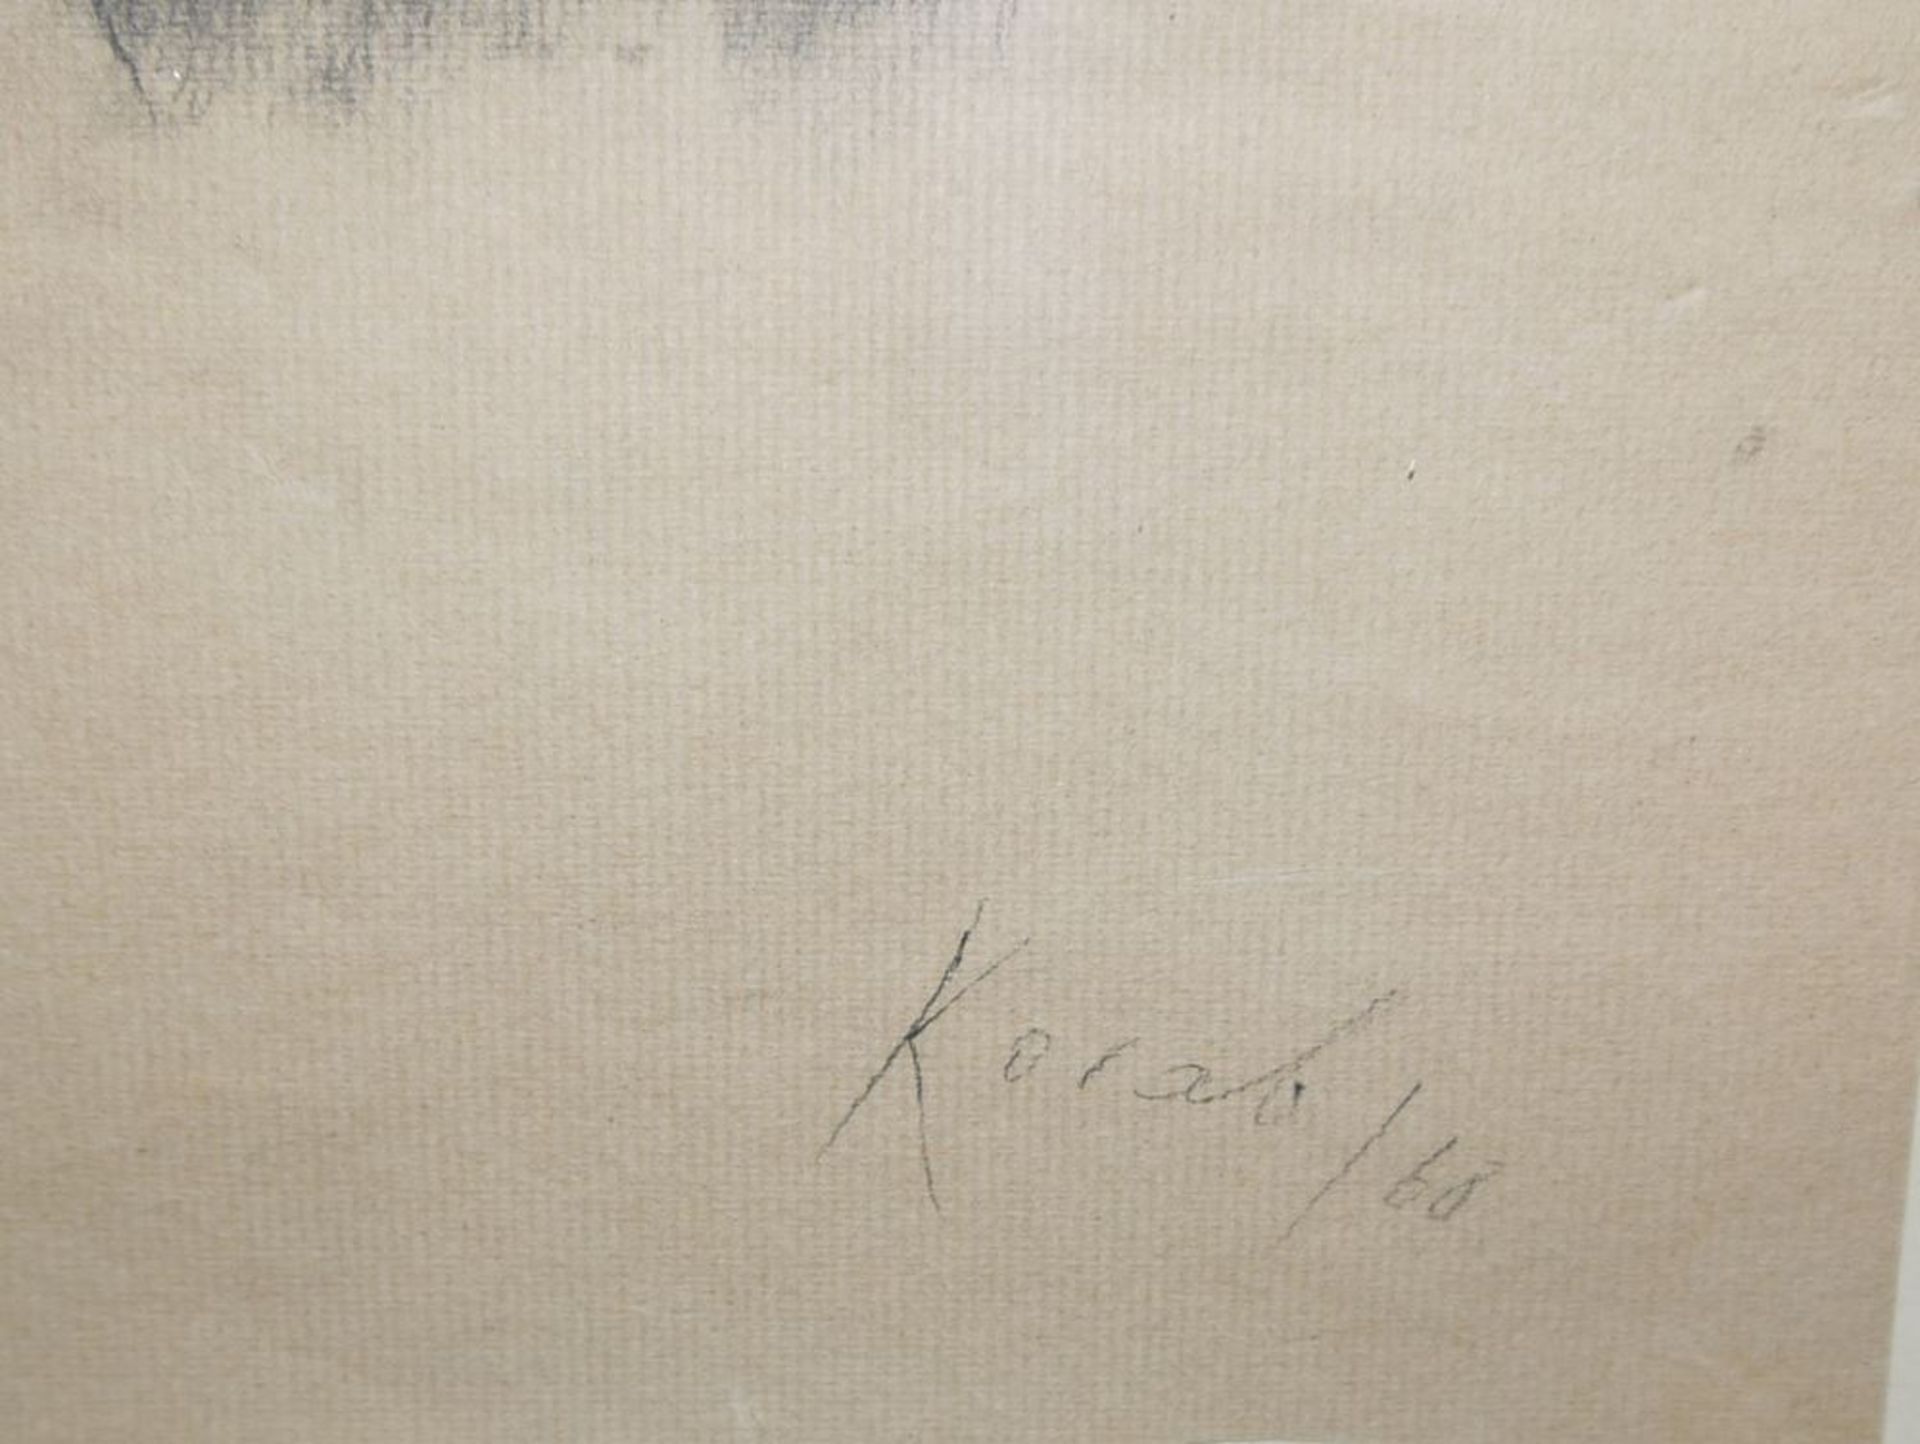 Karl Korab, "Dorf im Waldviertel", signierte Kohlezeichnung von 1968, gerahmt - Image 4 of 4